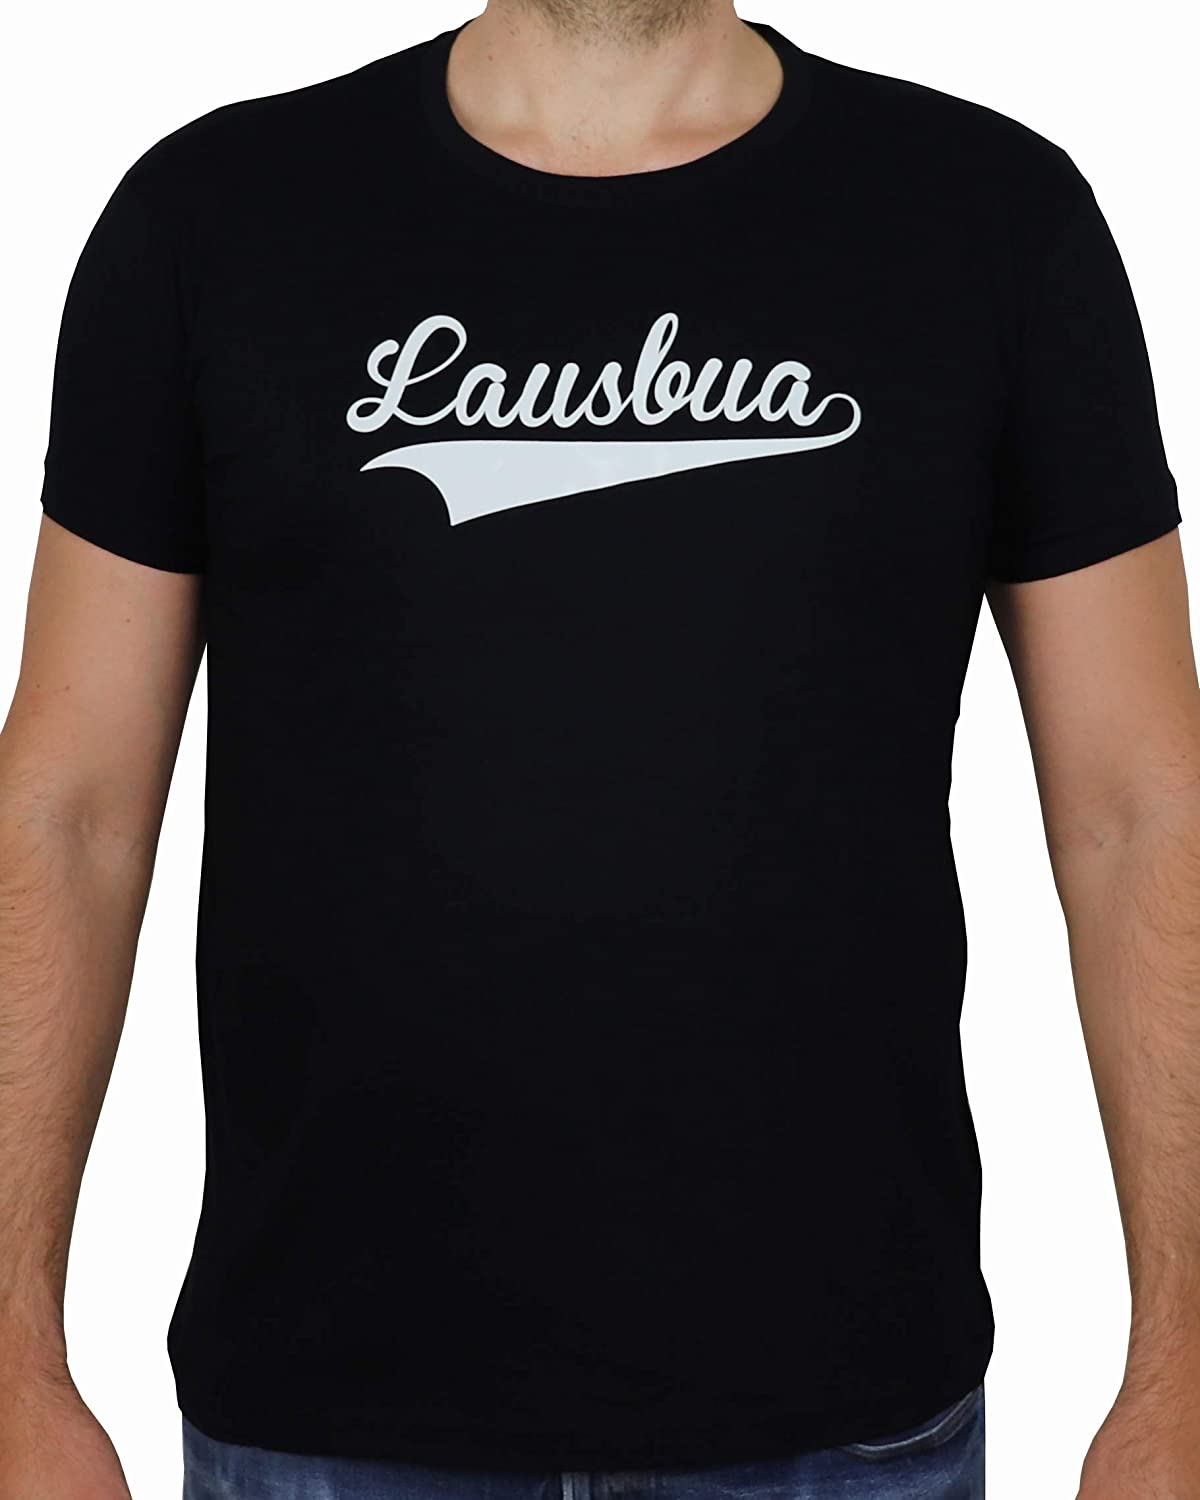 Schwarzes T-Shirt mit weissem Aufdruck Lausbua, Bayrisch Boarisch Bayern Dialekt, freche bayerische Buben (XXL)